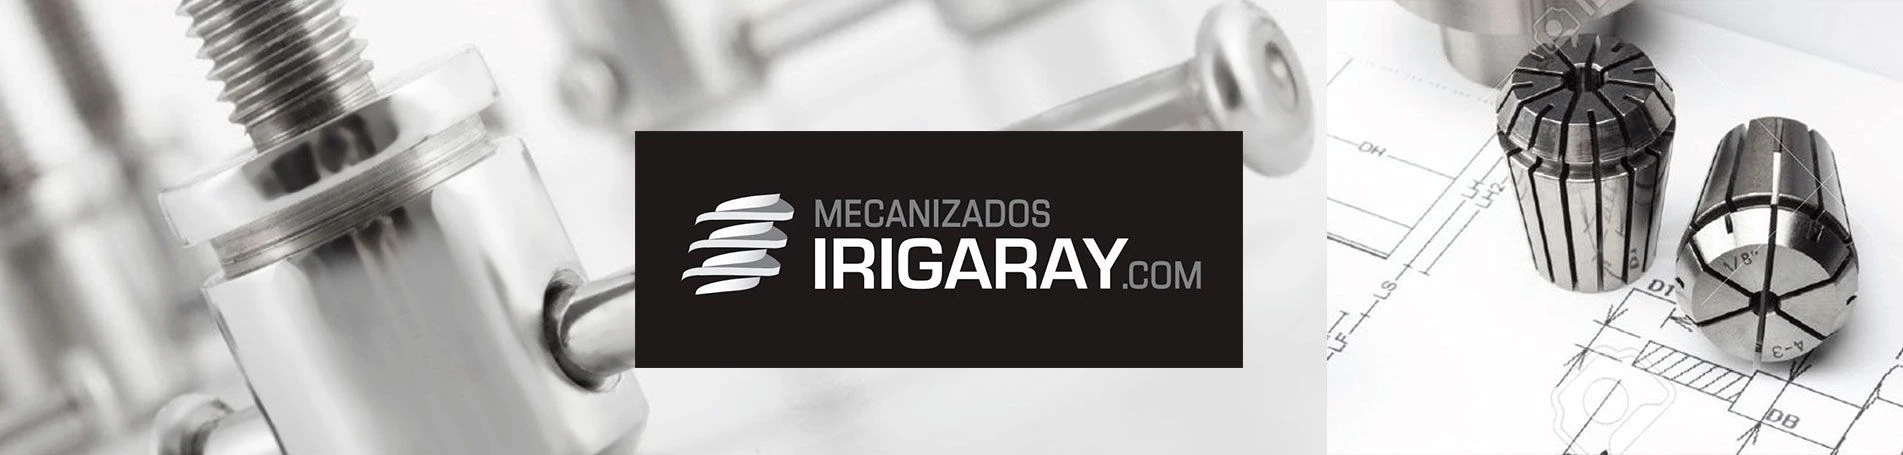 Nueva web e imagen corporativa para Mecanizados Irigaray